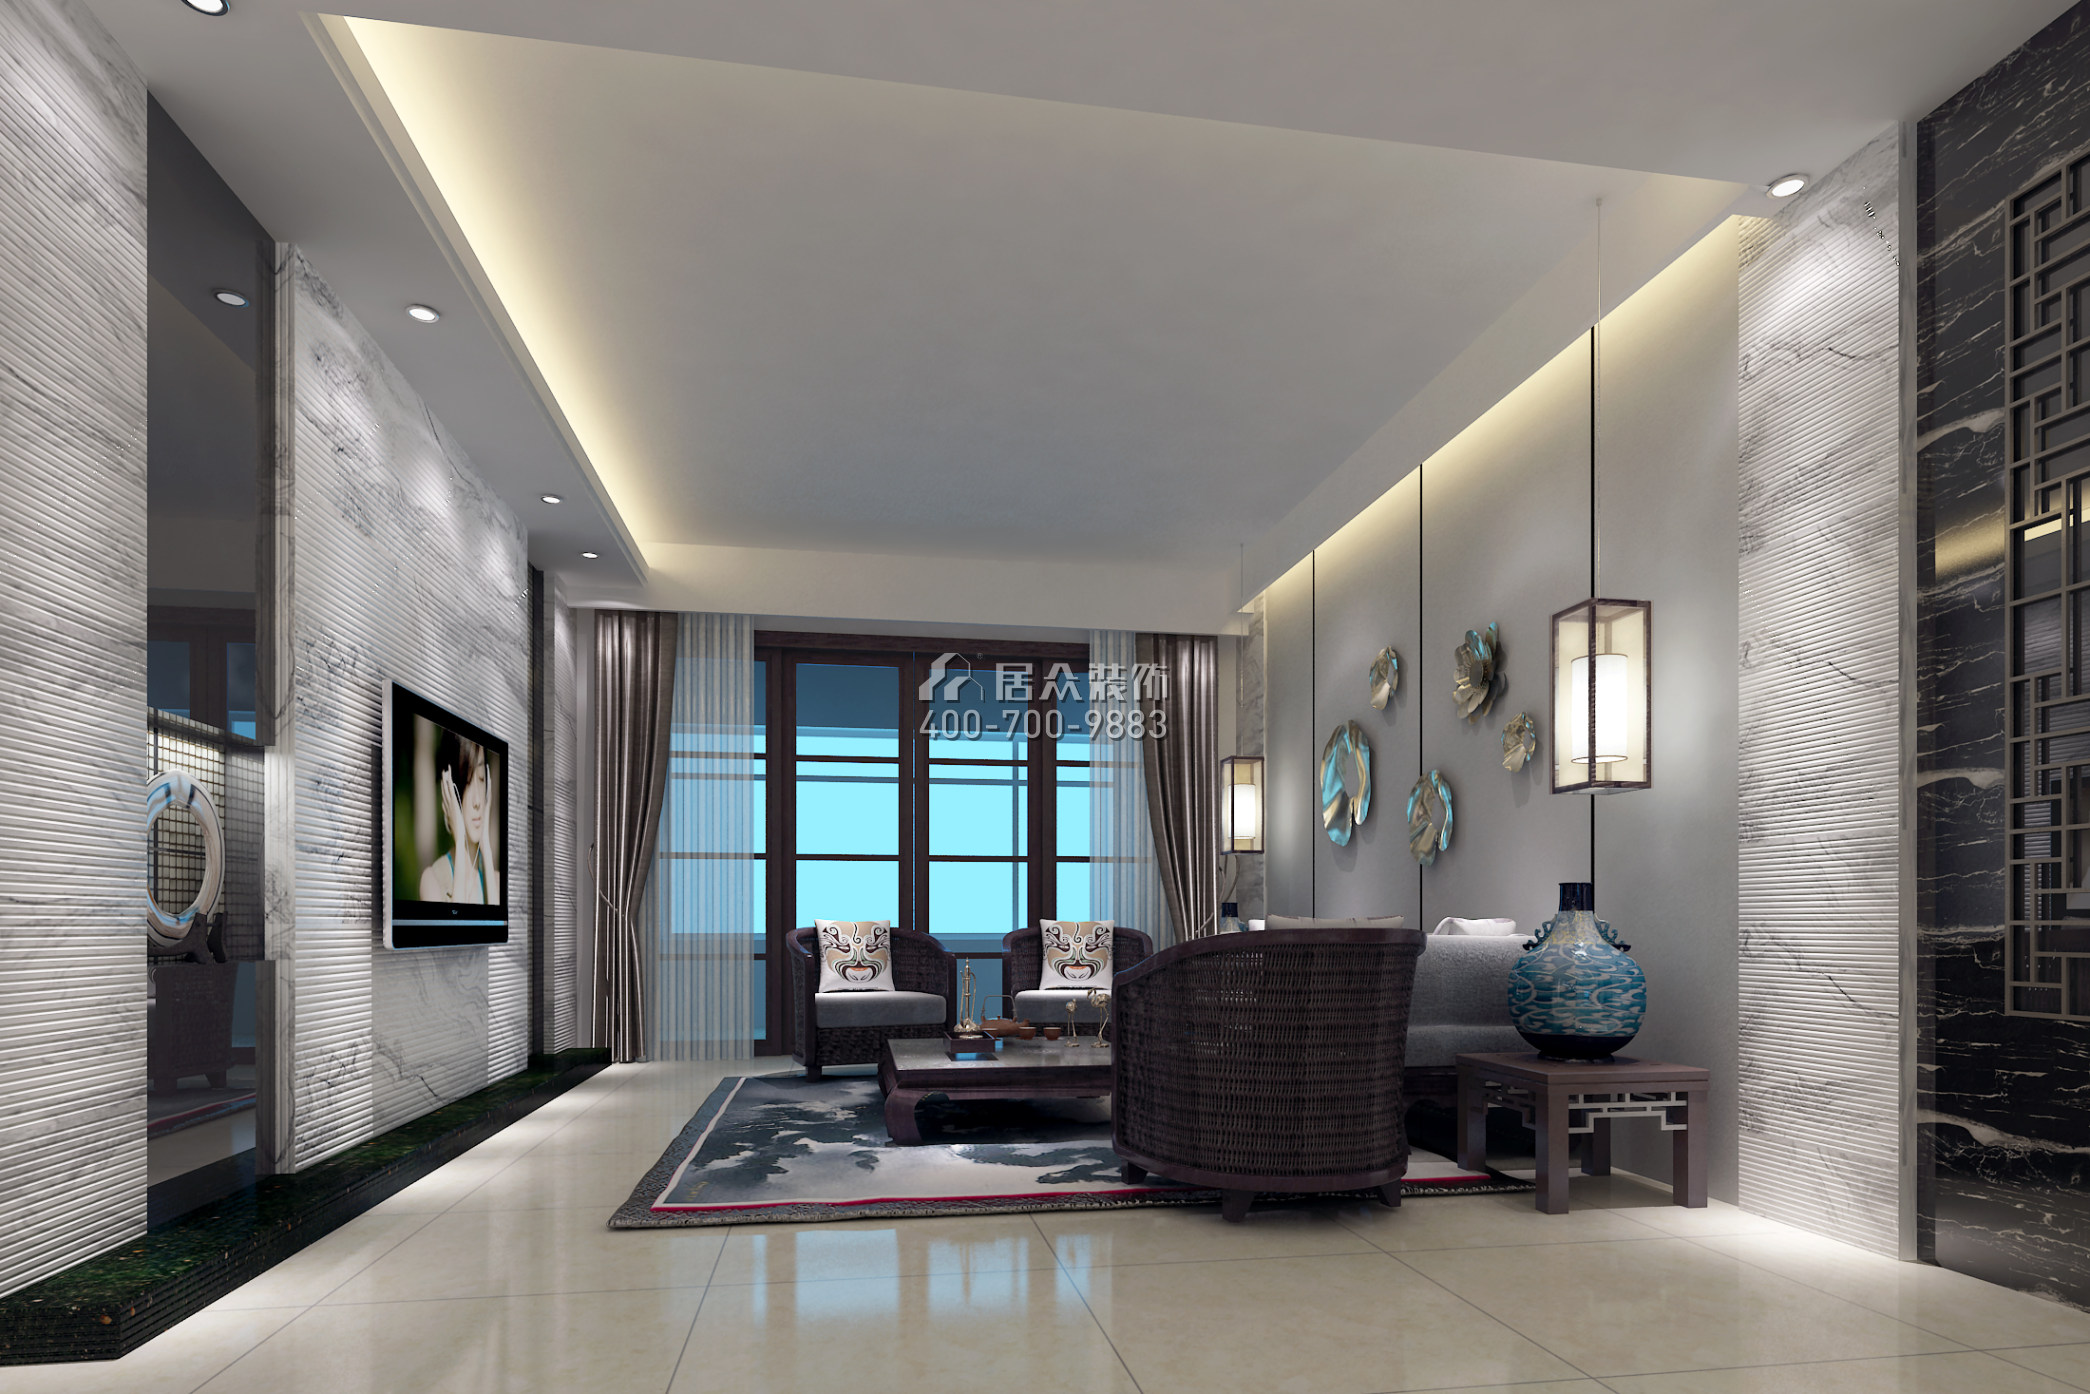 保利新天地153平方米中式风格平层户型客厅装修效果图